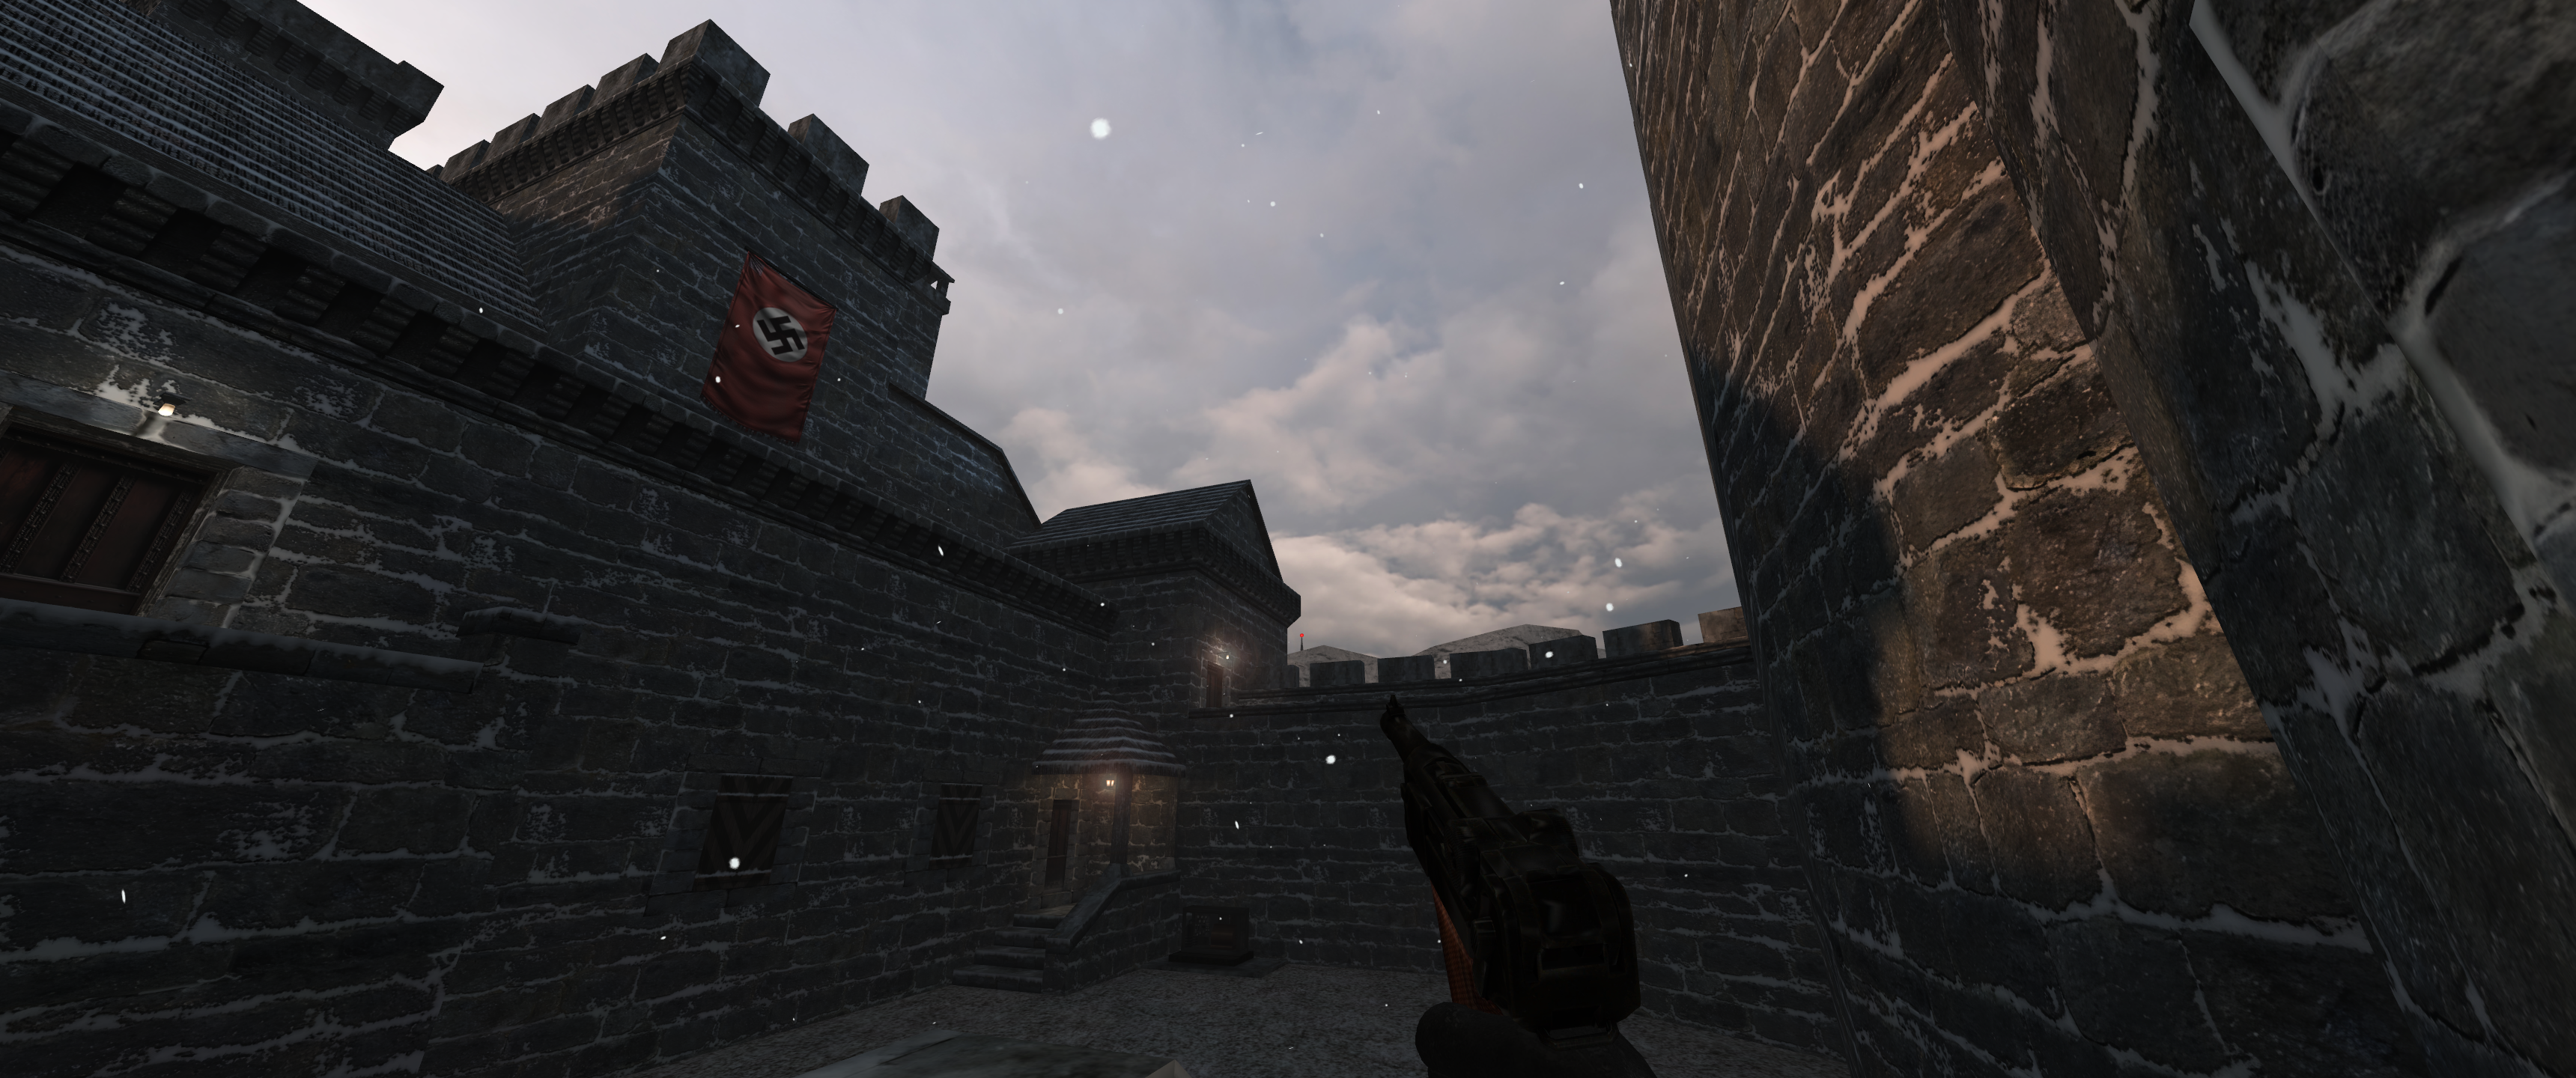 Return To Castle Wolfenstein World War Ii Swastika Video Game Art Gun Sky Clouds Video Games Flag Bu 3440x1440